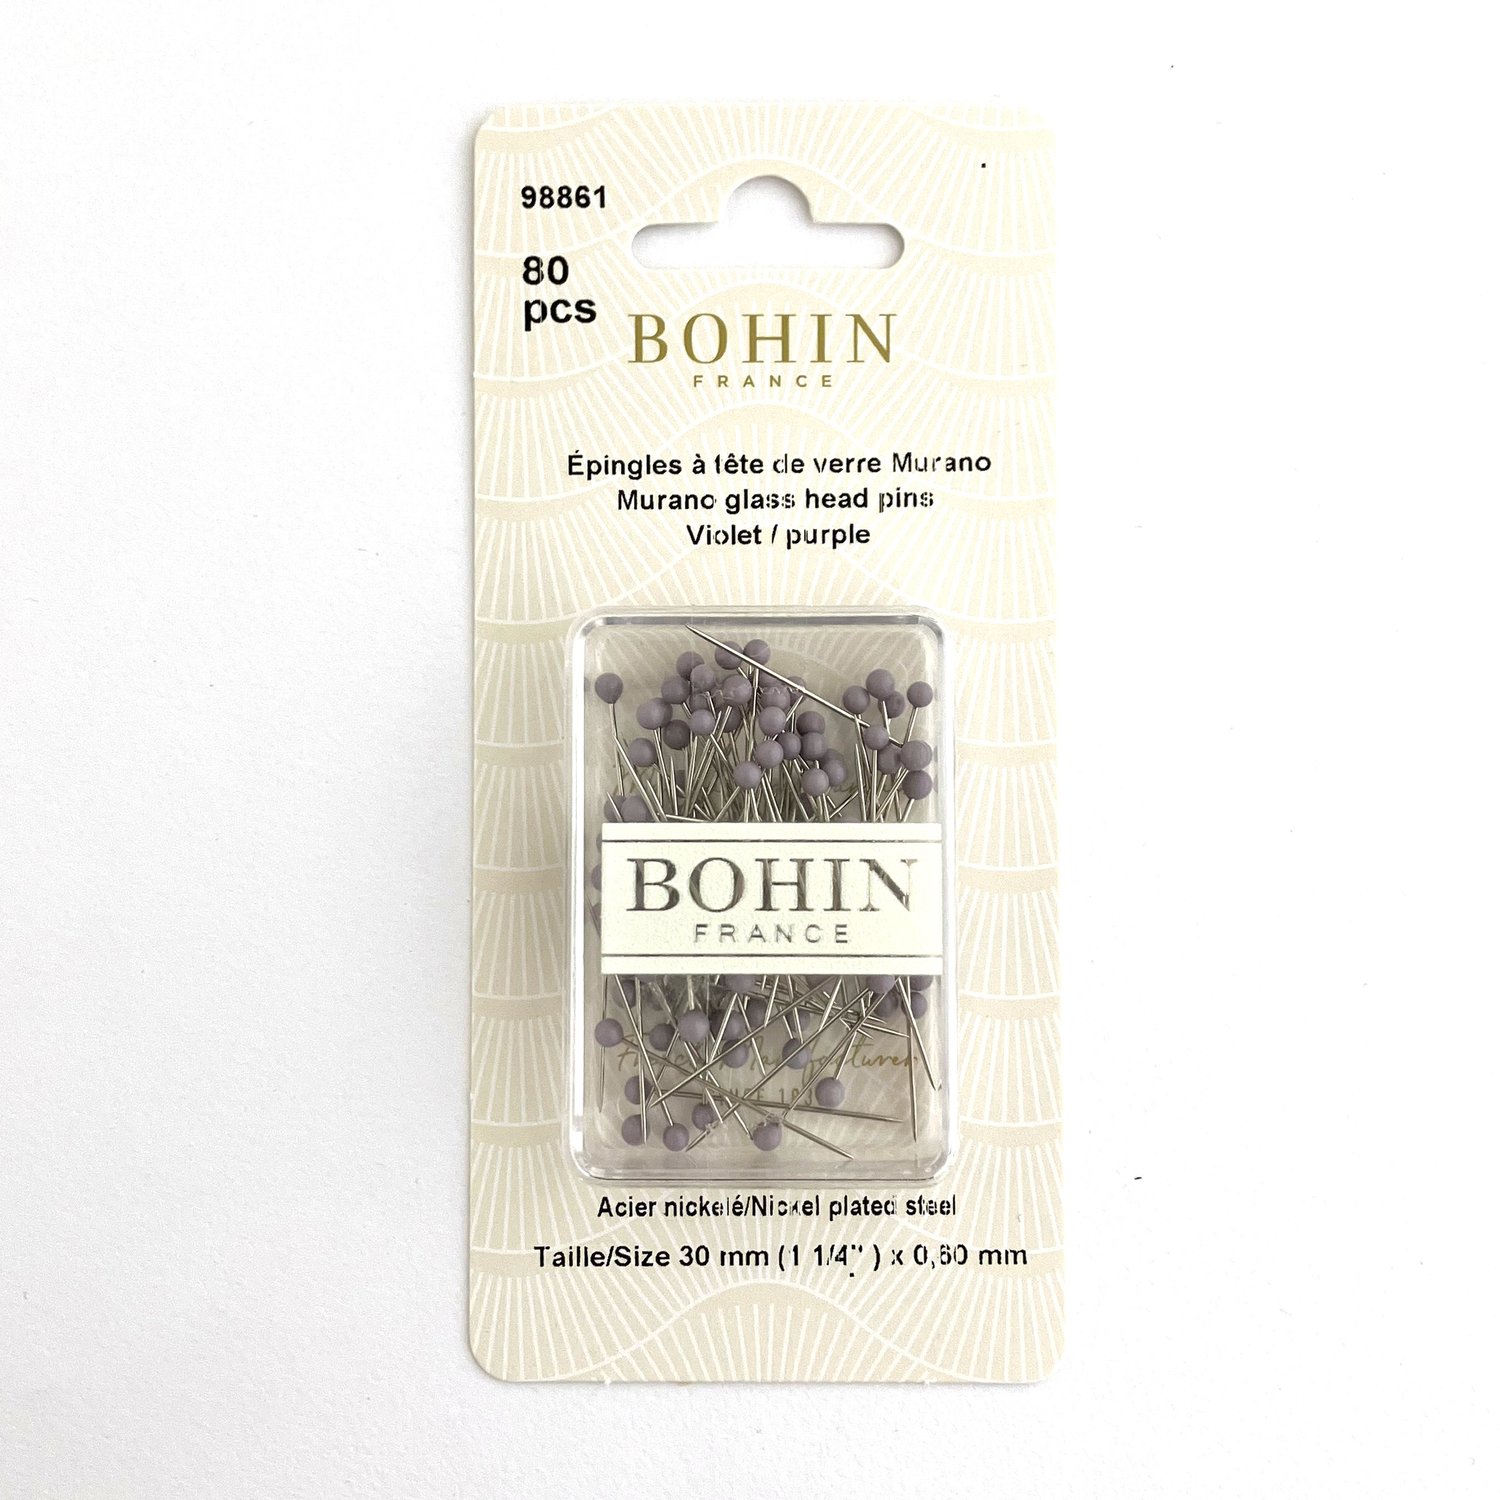 Bohin 80 Count Nile Green Glass Head Pins | Bohin #98851